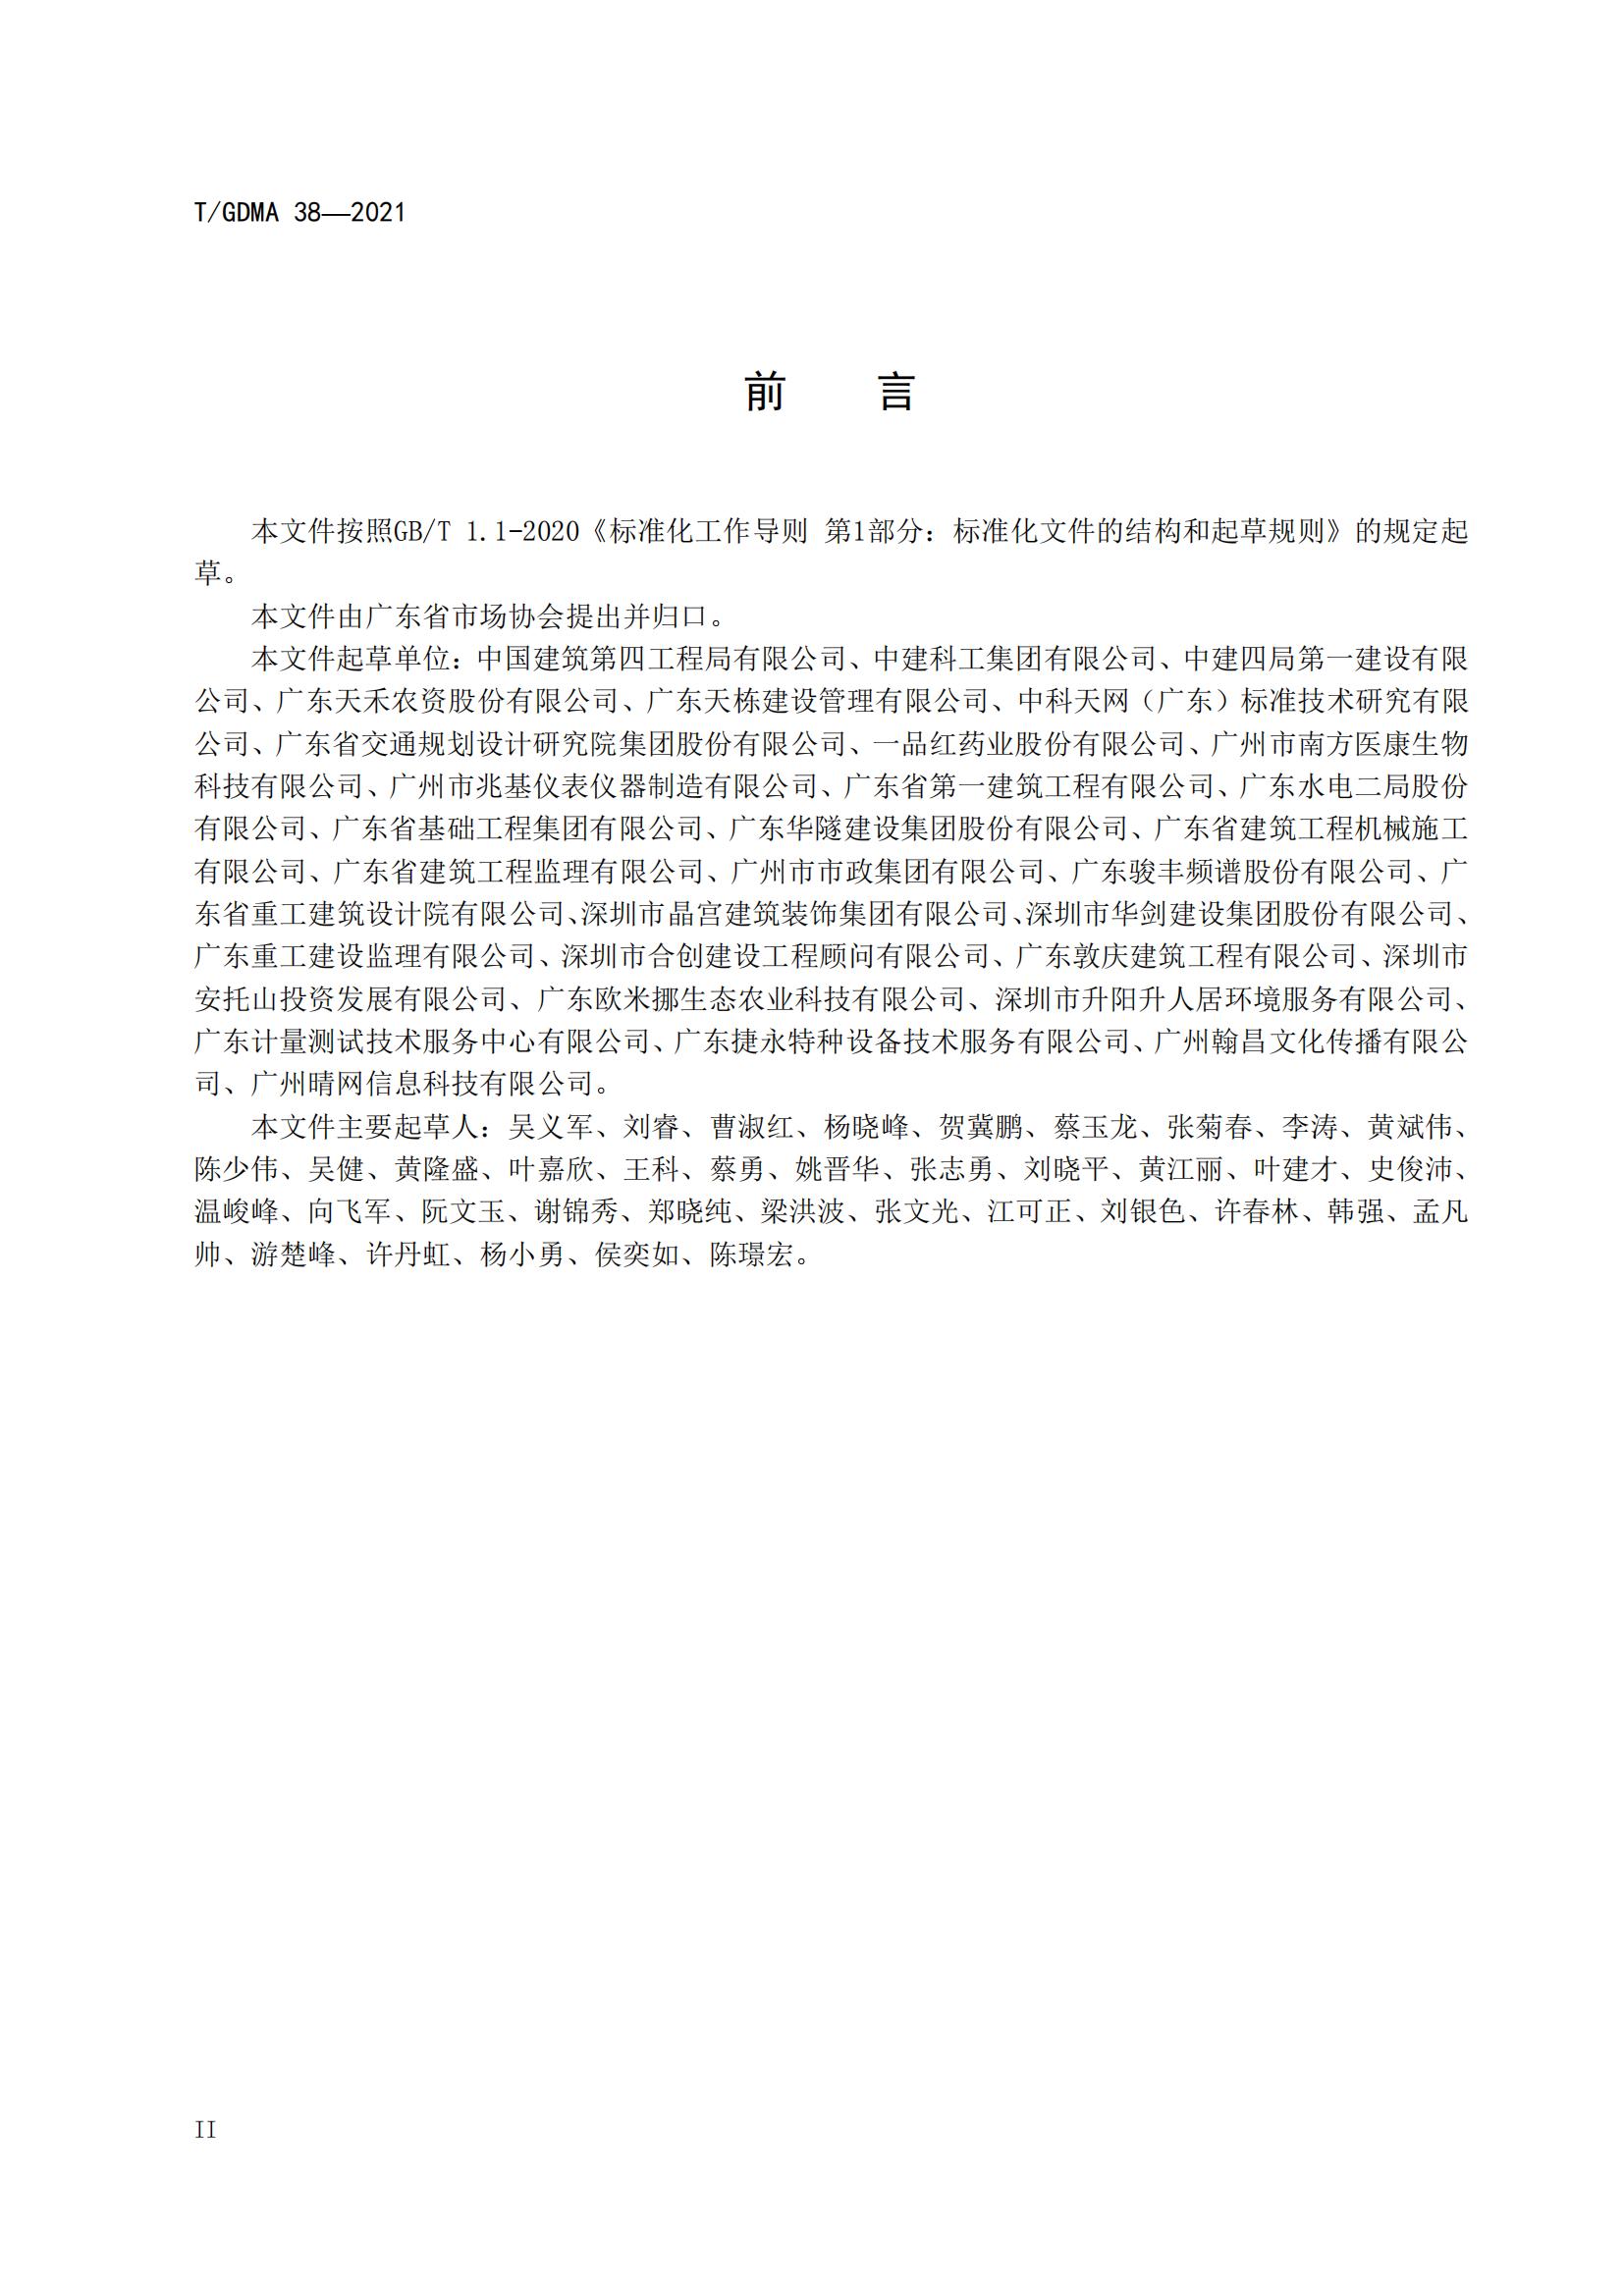 TGDMA 38 广东省守合同重信用企业等级评定规范-发布稿_03.jpg